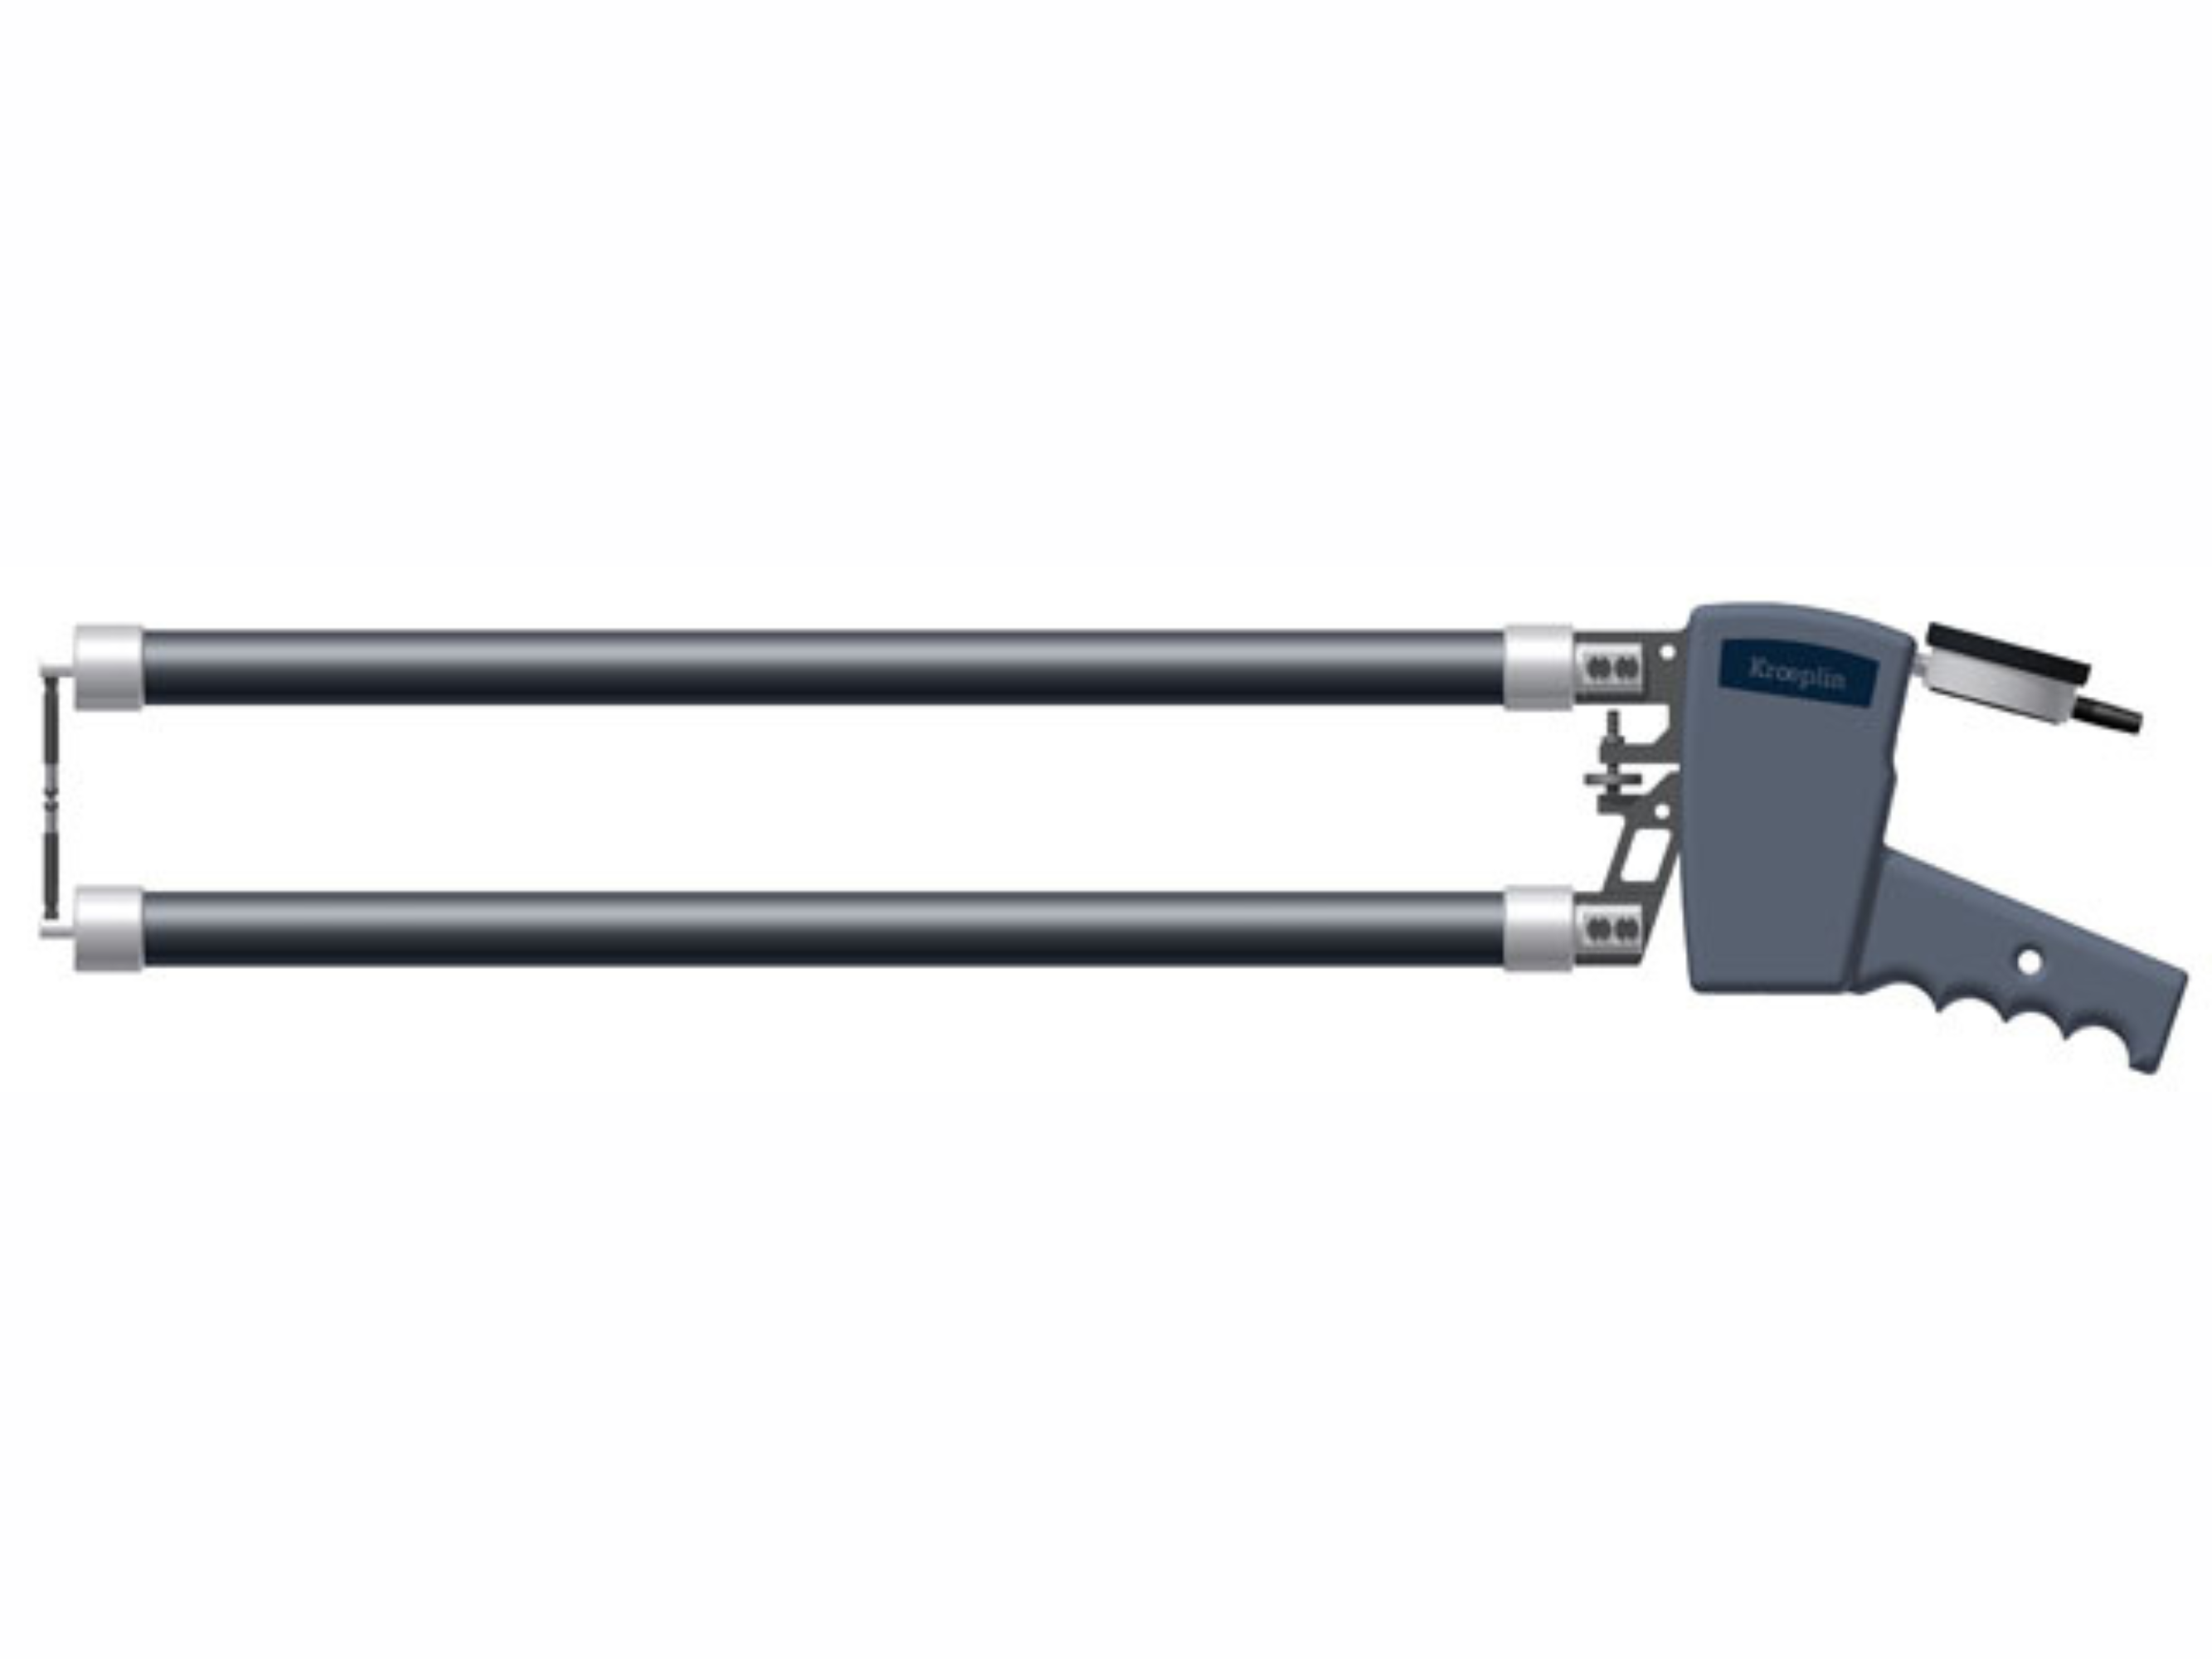 Digital External Caliper Gauge 0-100mm, 0.1mm D12100